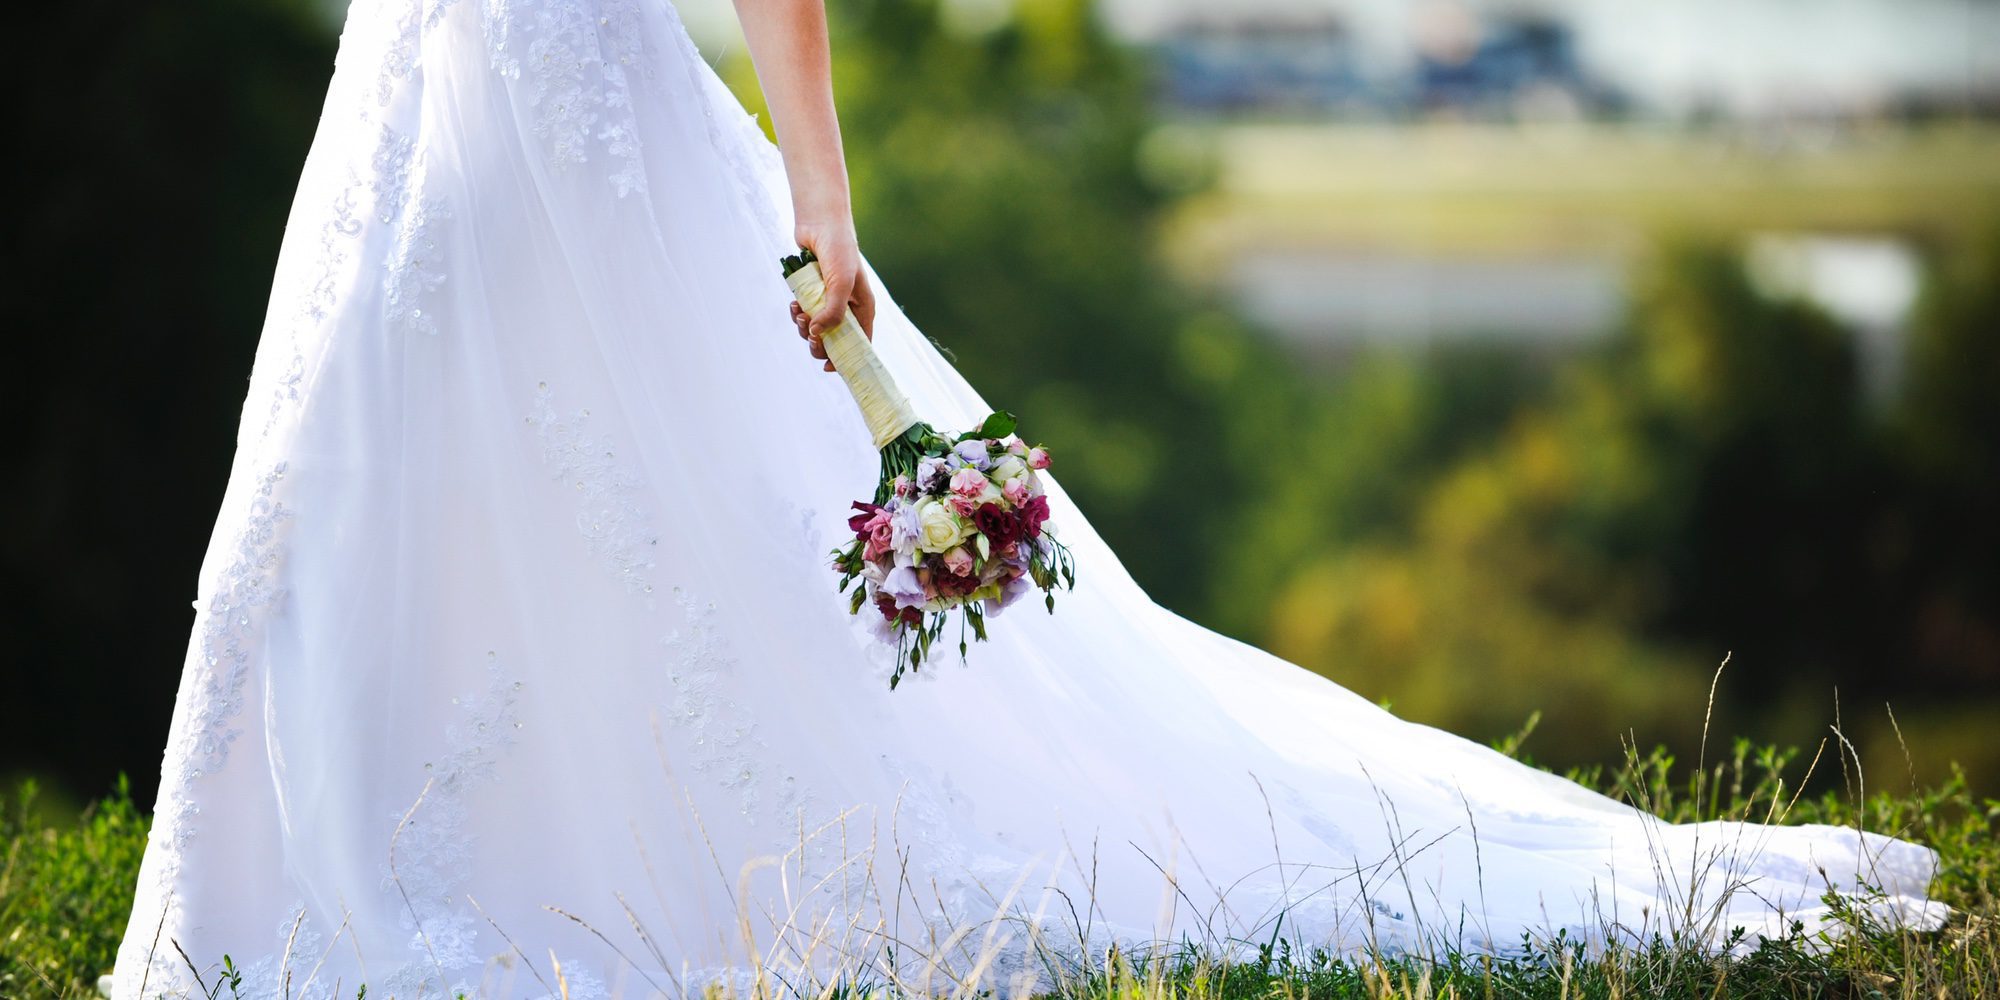 Conoce la historia de la mujer que vendió su vestido de novia en Ebay para pagarse el divorcio